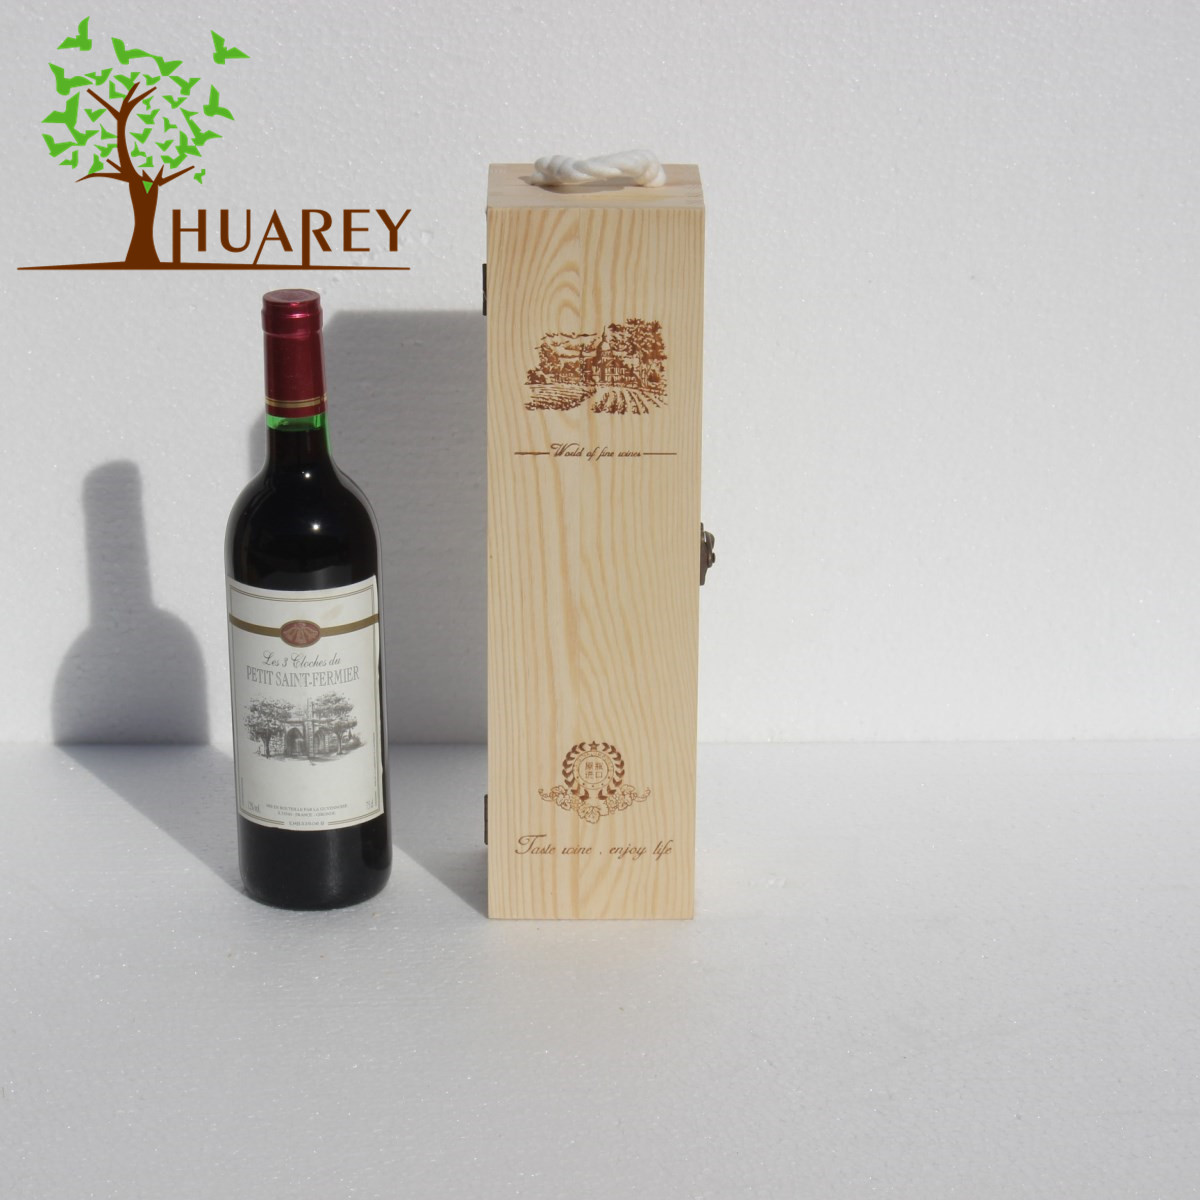 Storage Pine Display Tissue Red Wine Wooden Box